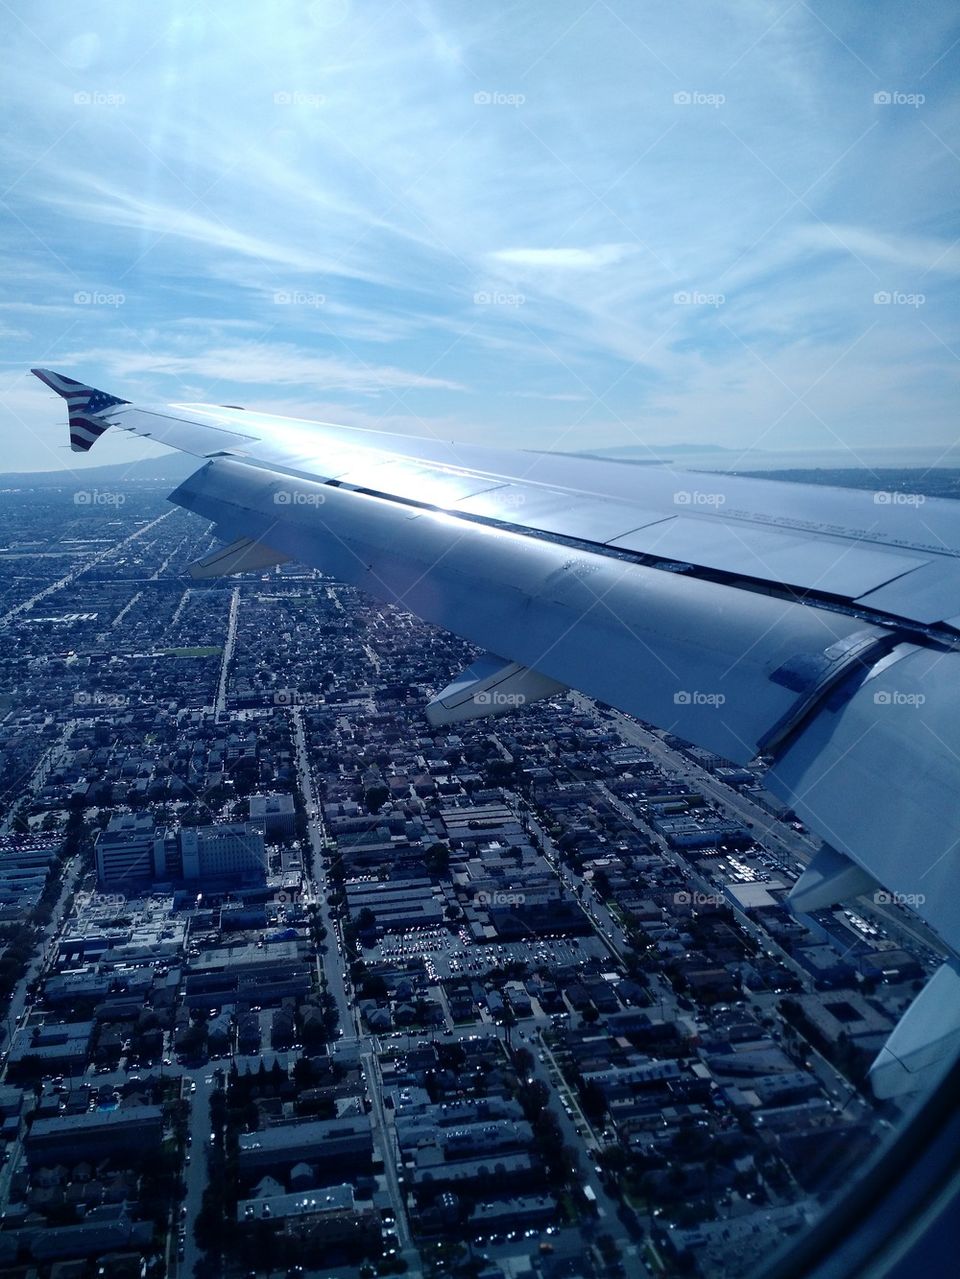 Landing in LA